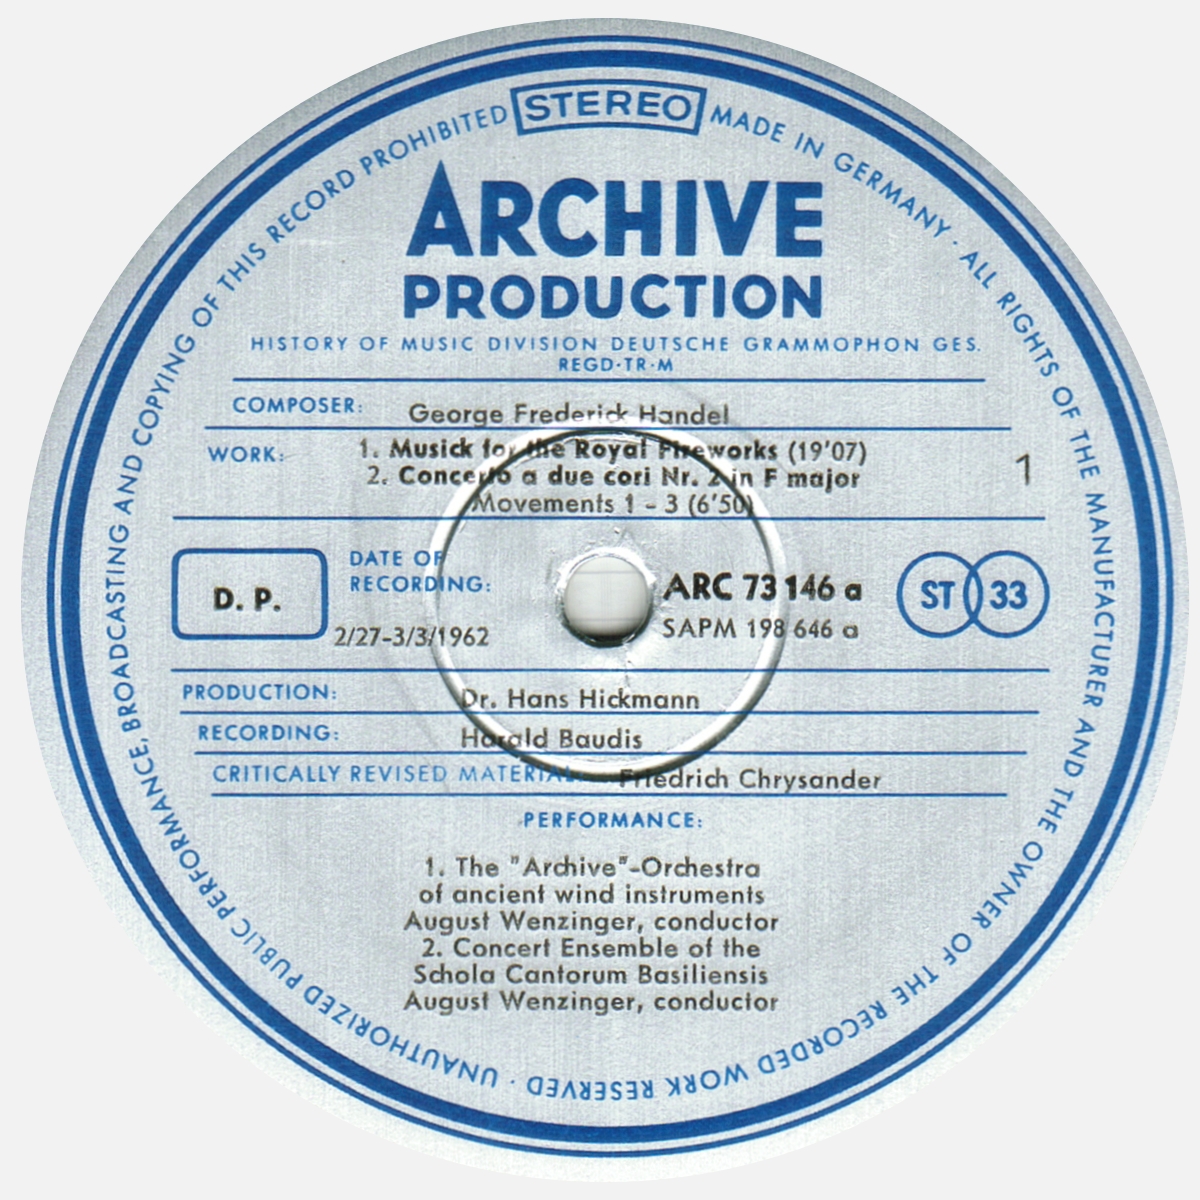 Étiquette recto disque Deutsche Grammophon Archive Production ARC 73146 198646 SAPM, cliquer pour une vue agrandie